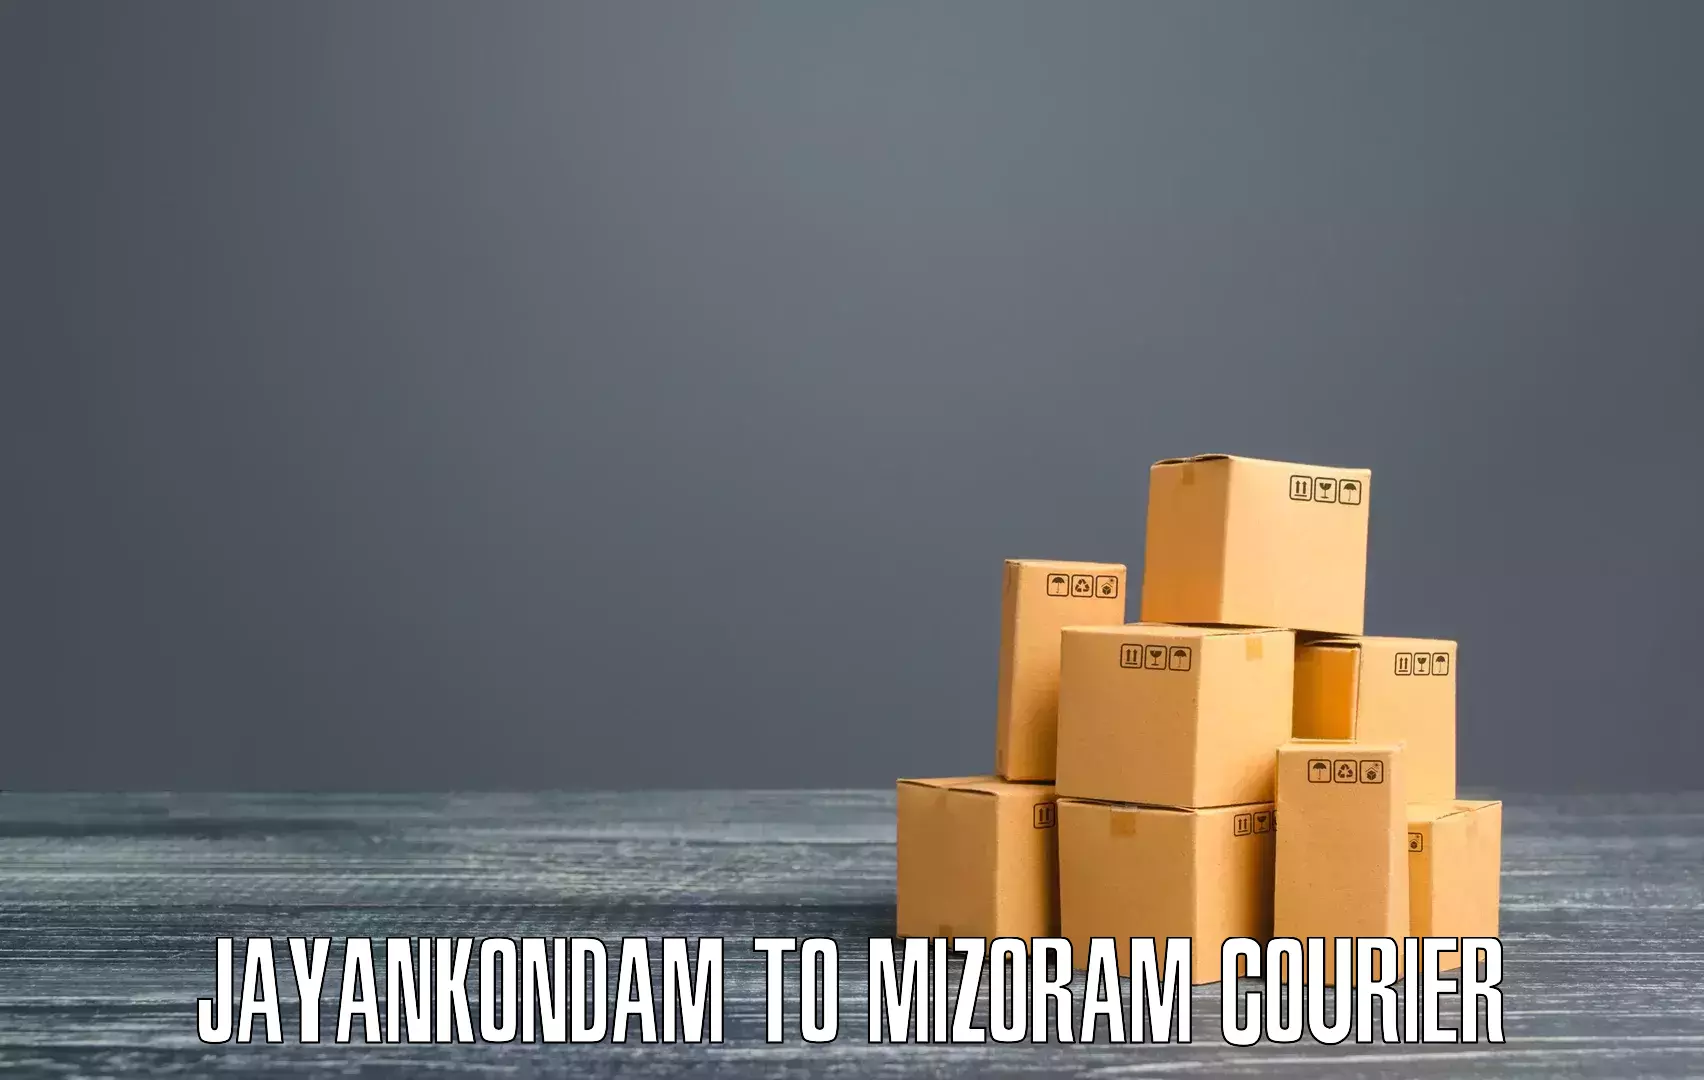 Customizable shipping options Jayankondam to Hnahthial